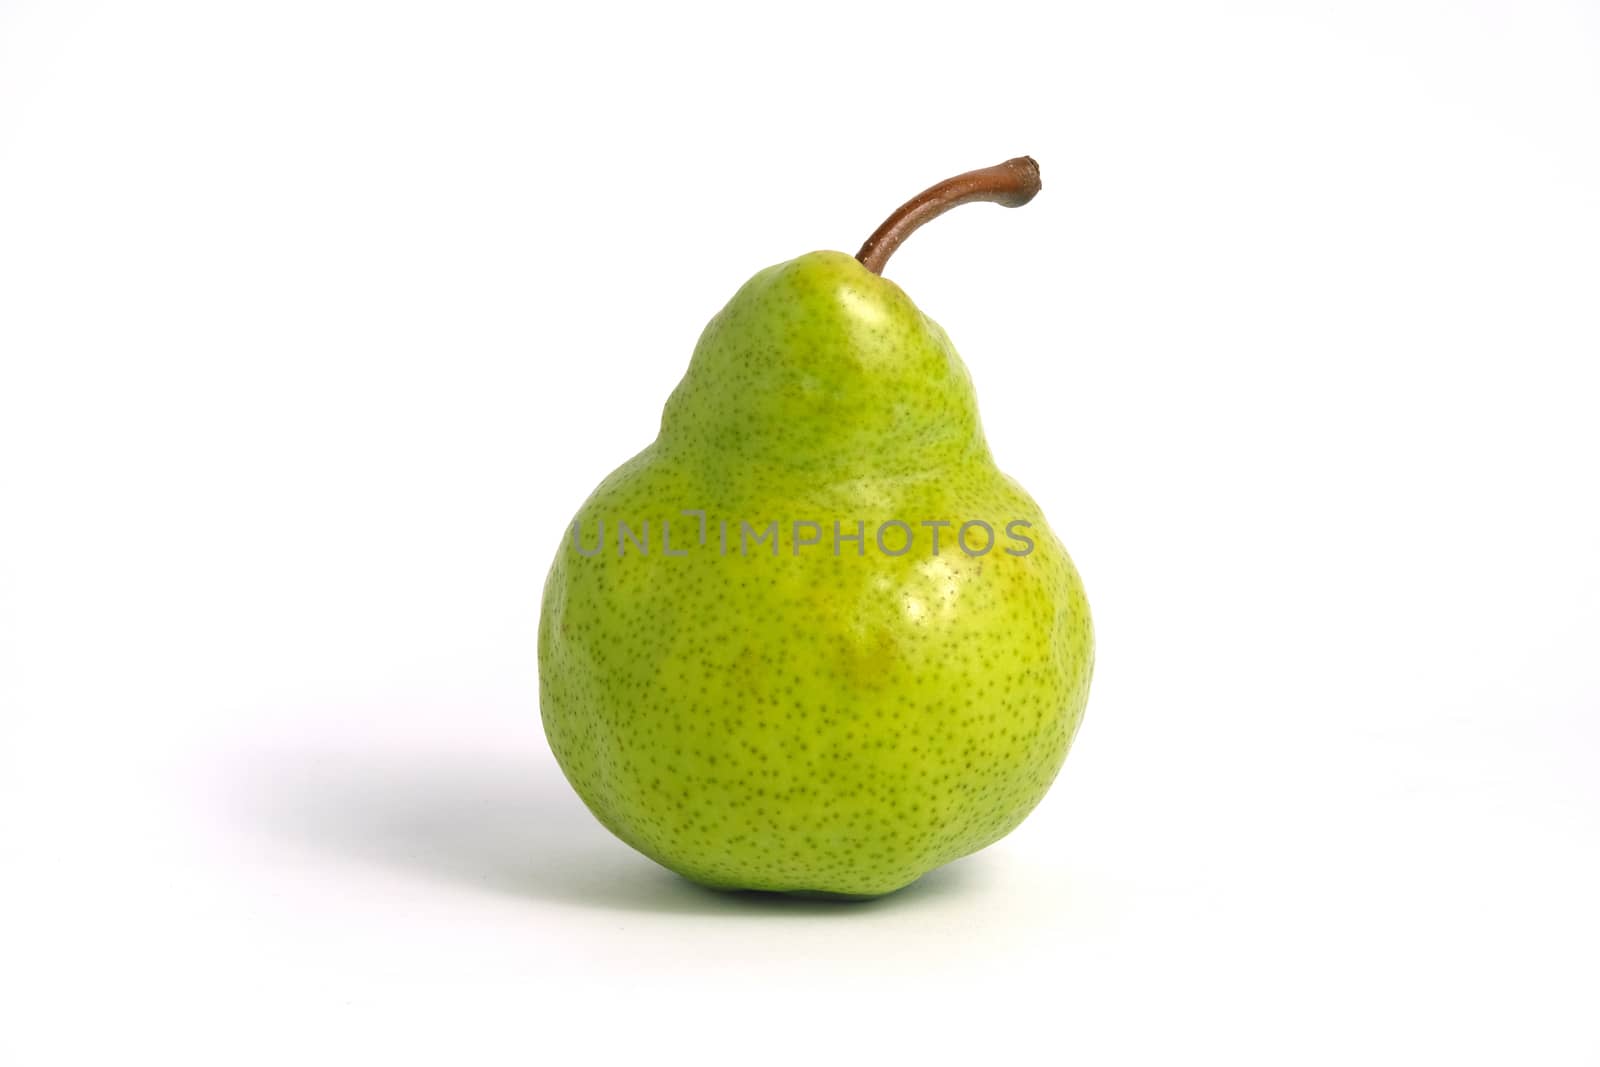 Single fresh Packham pears fruit isolated on white background